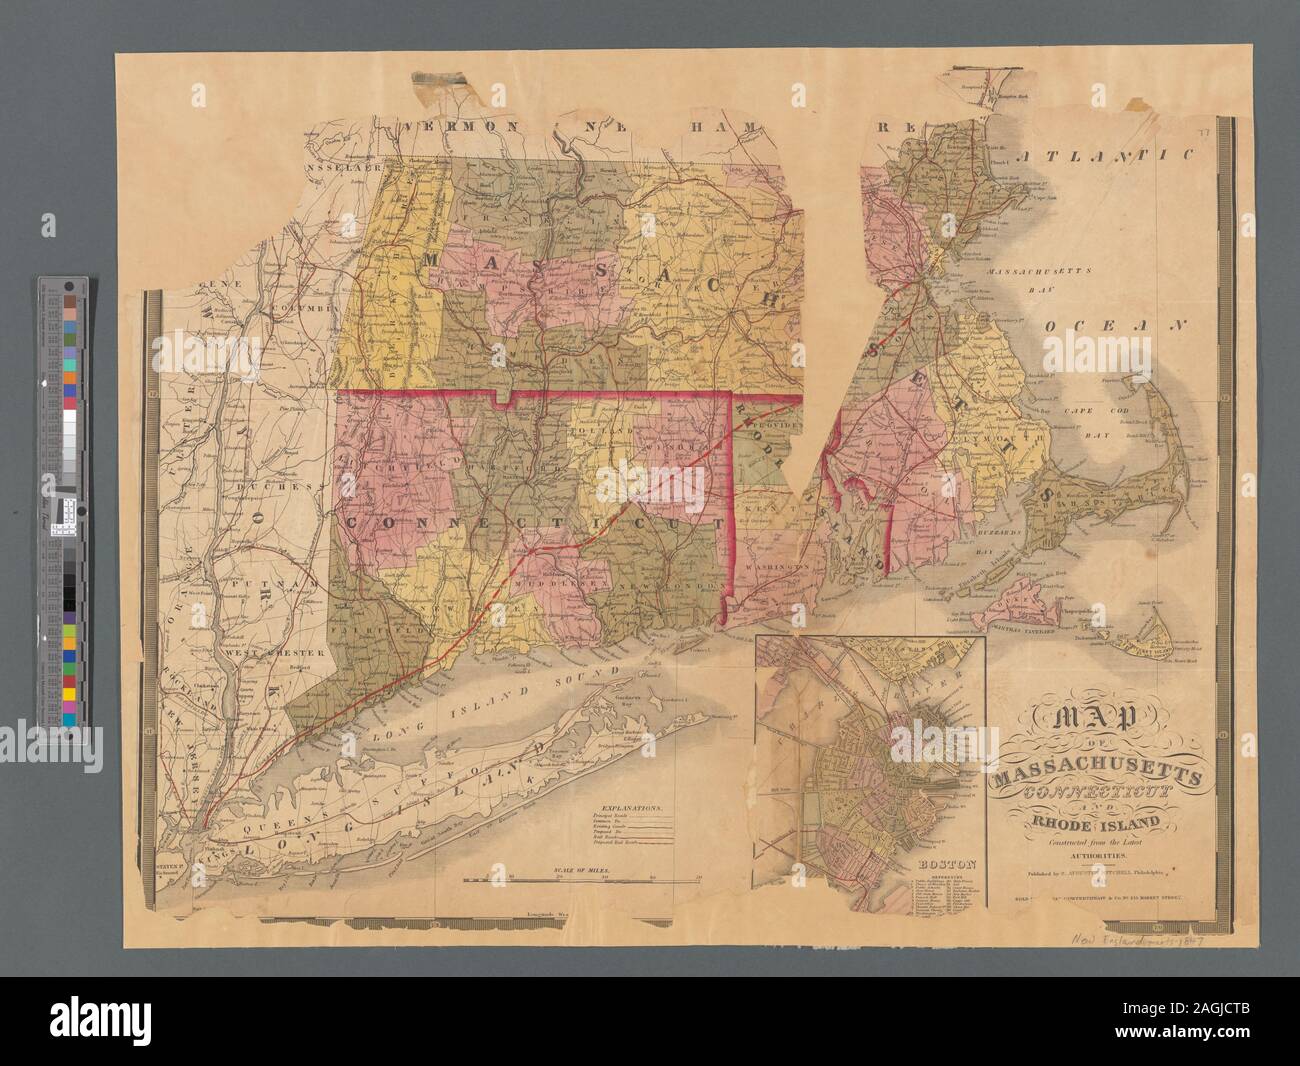 Sollievo mostrato graficamente. Copre anche il fiume Hudson Valley alla confluenza del Mohawk e Long Island. Mostra strade, canali (effettivi e proposto), e ferrovie (effettivi e proposto). La longitudine in gradi ovest da Greenwich e ad est da Washington, D.C. Colorata dalla contea; confini degli stati in rosso. Include la finestra Mappa di Boston, colorato da Ward, con la propria scala e chiave. La mappatura della nazione (borsa di NEH, 2015-2018); Mappa del Massachusetts, Connecticut e Rhode Island Foto Stock